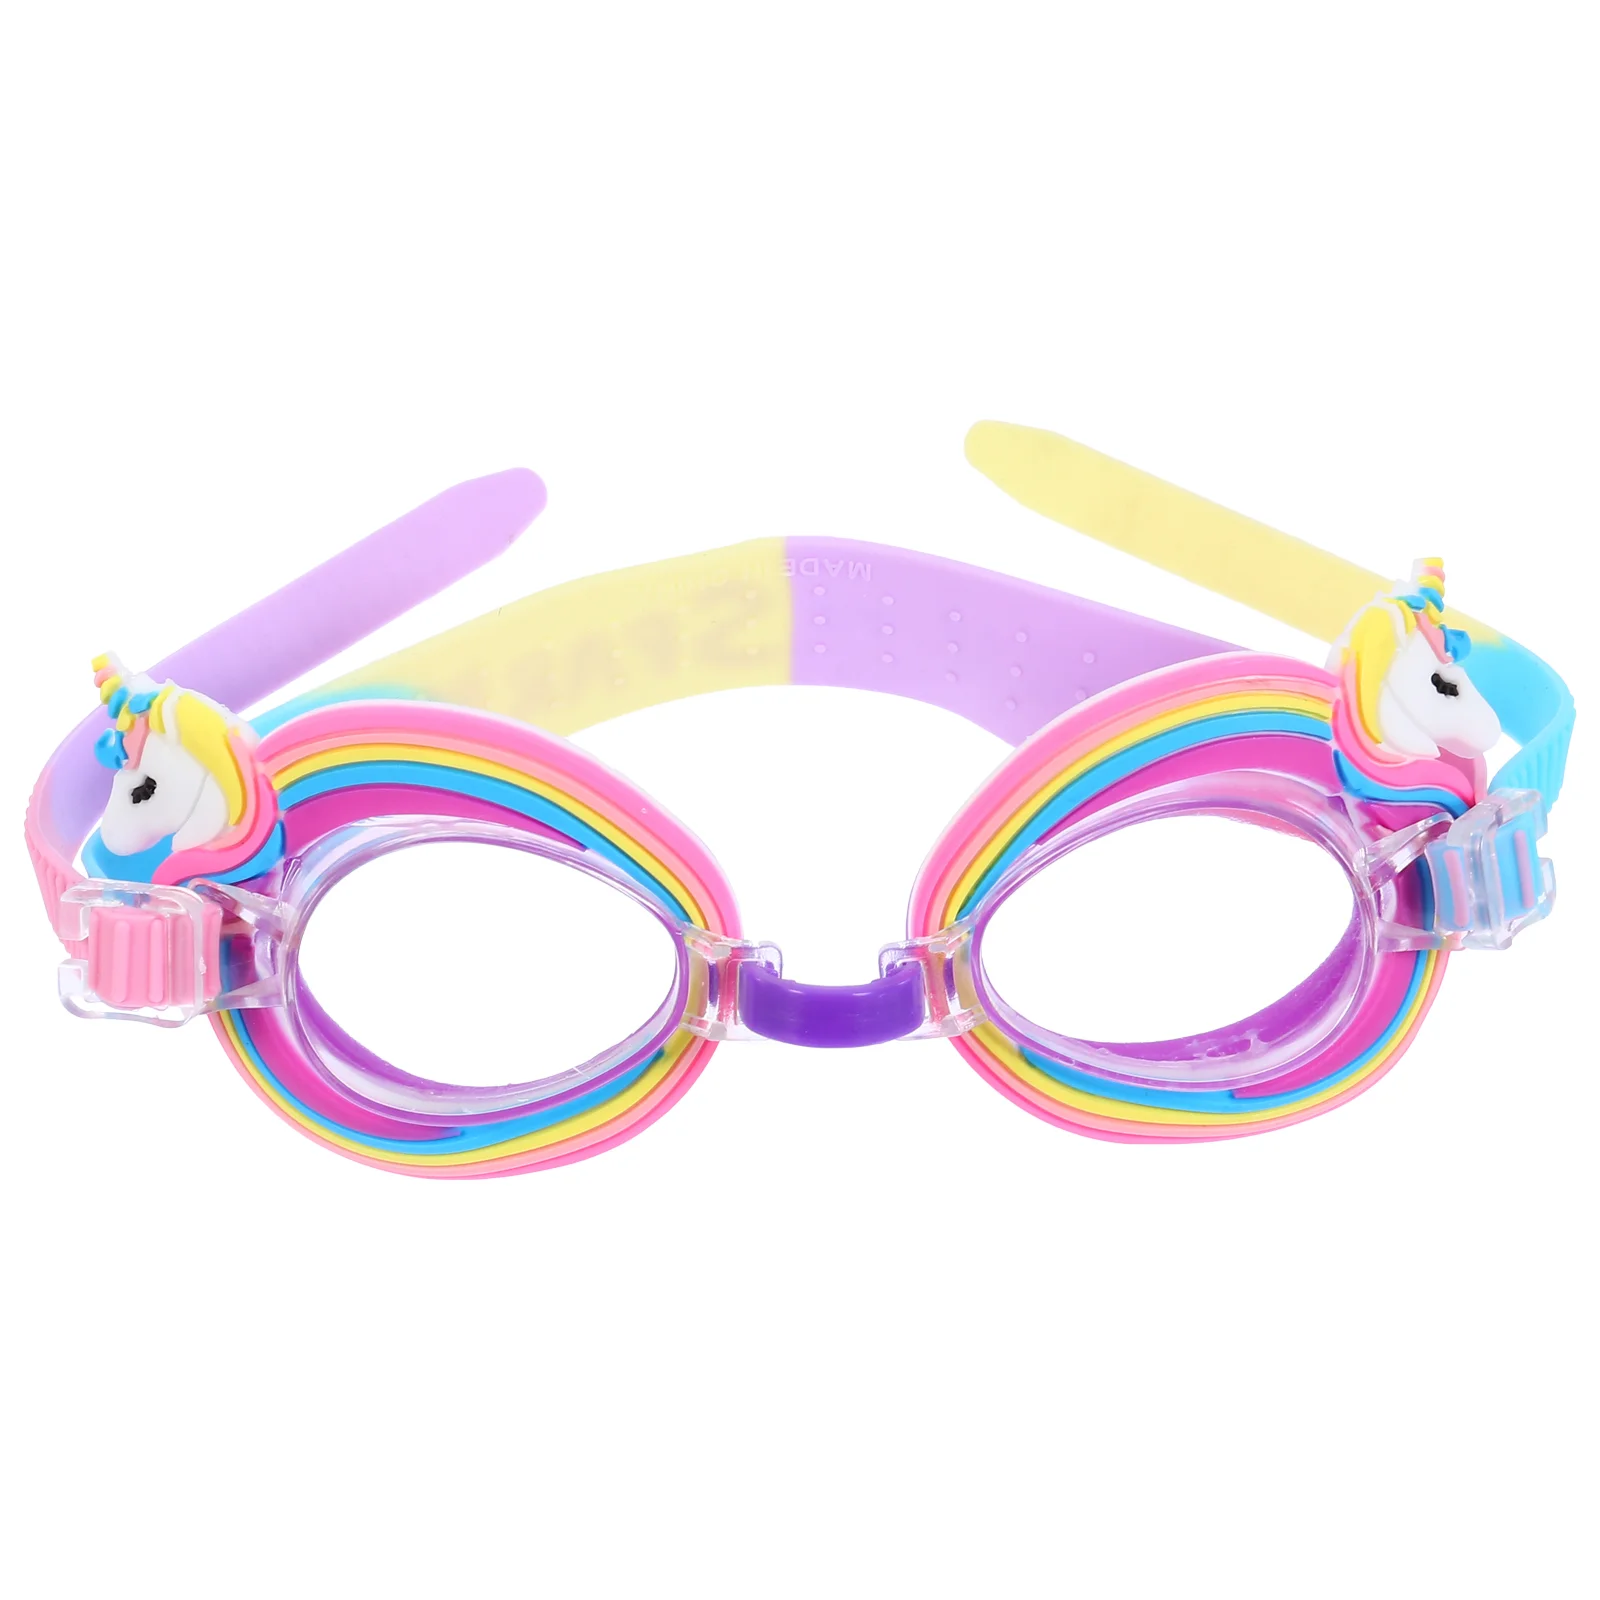 

Детские плавательные очки, водонепроницаемые противотуманные очки с УФ-защитой, силиконовые очки для плавания для мальчиков 3 лет